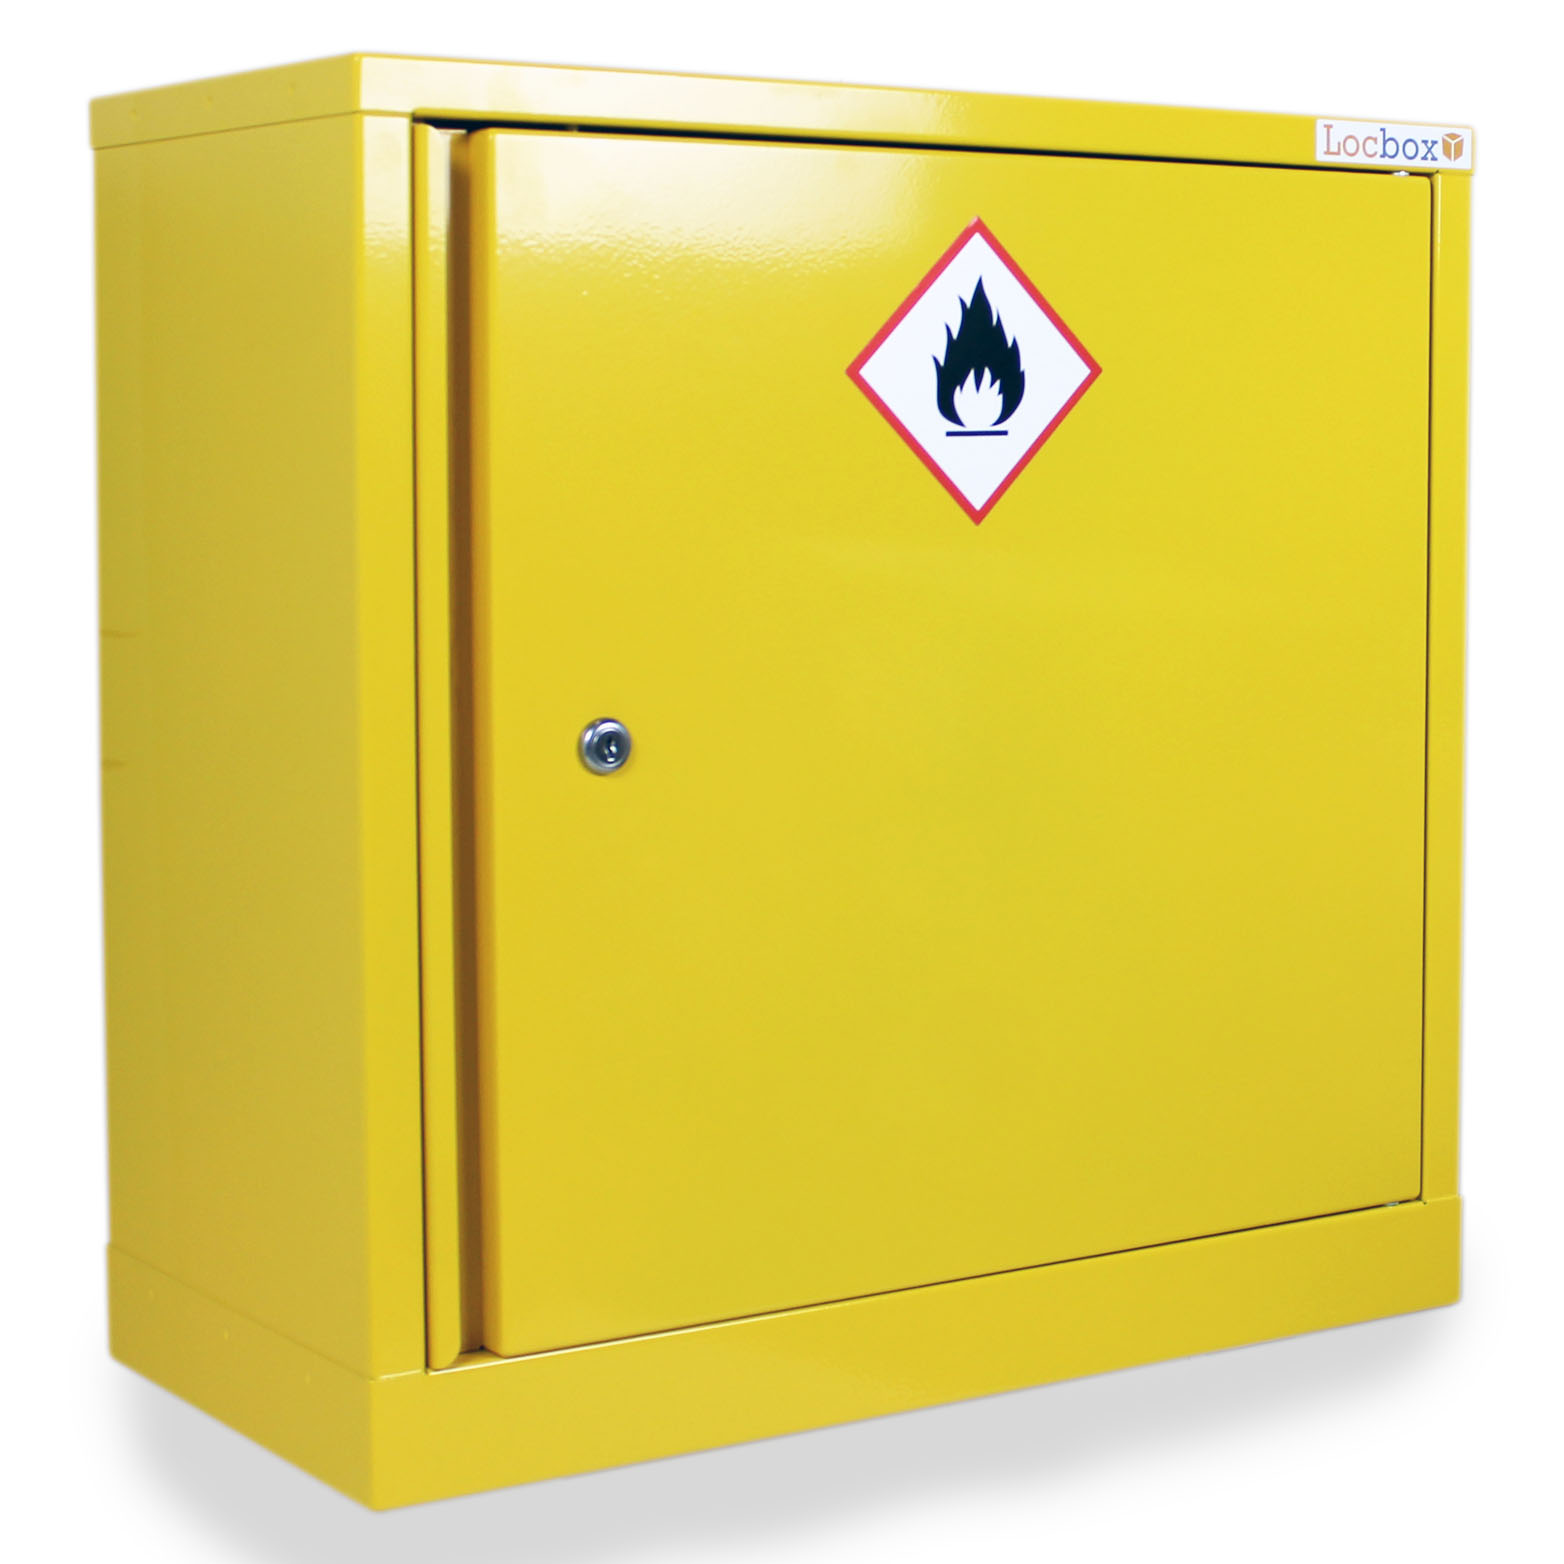 Haz663 Hazardous Substance Cabinet Coshh Cabinet